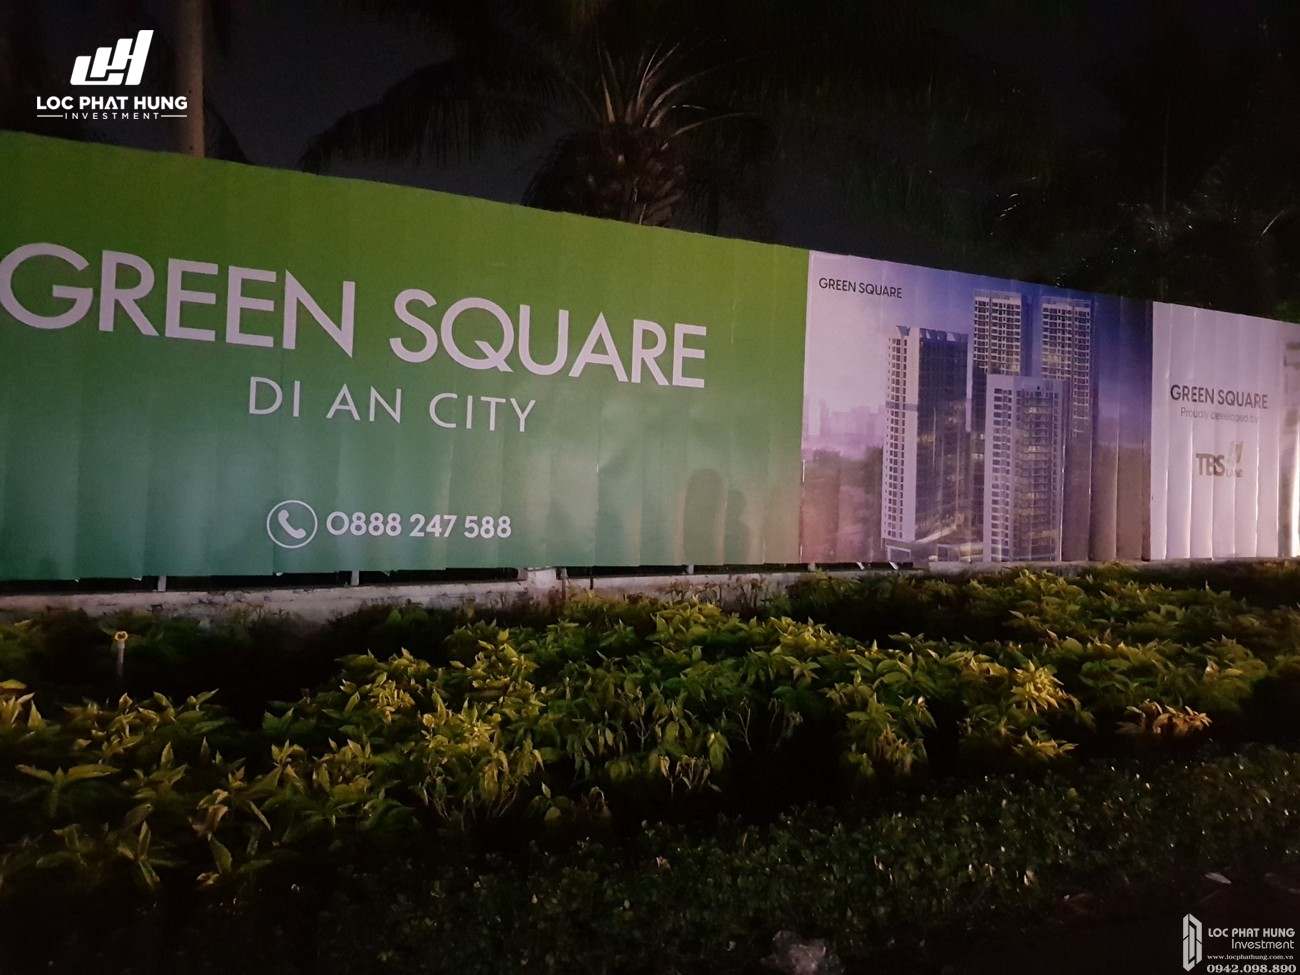 Tiến độ dự án Căn Hộ chung cư Green Square 03/2020 Dĩ An Đường QL 1K chủ đầu tư TBS Land